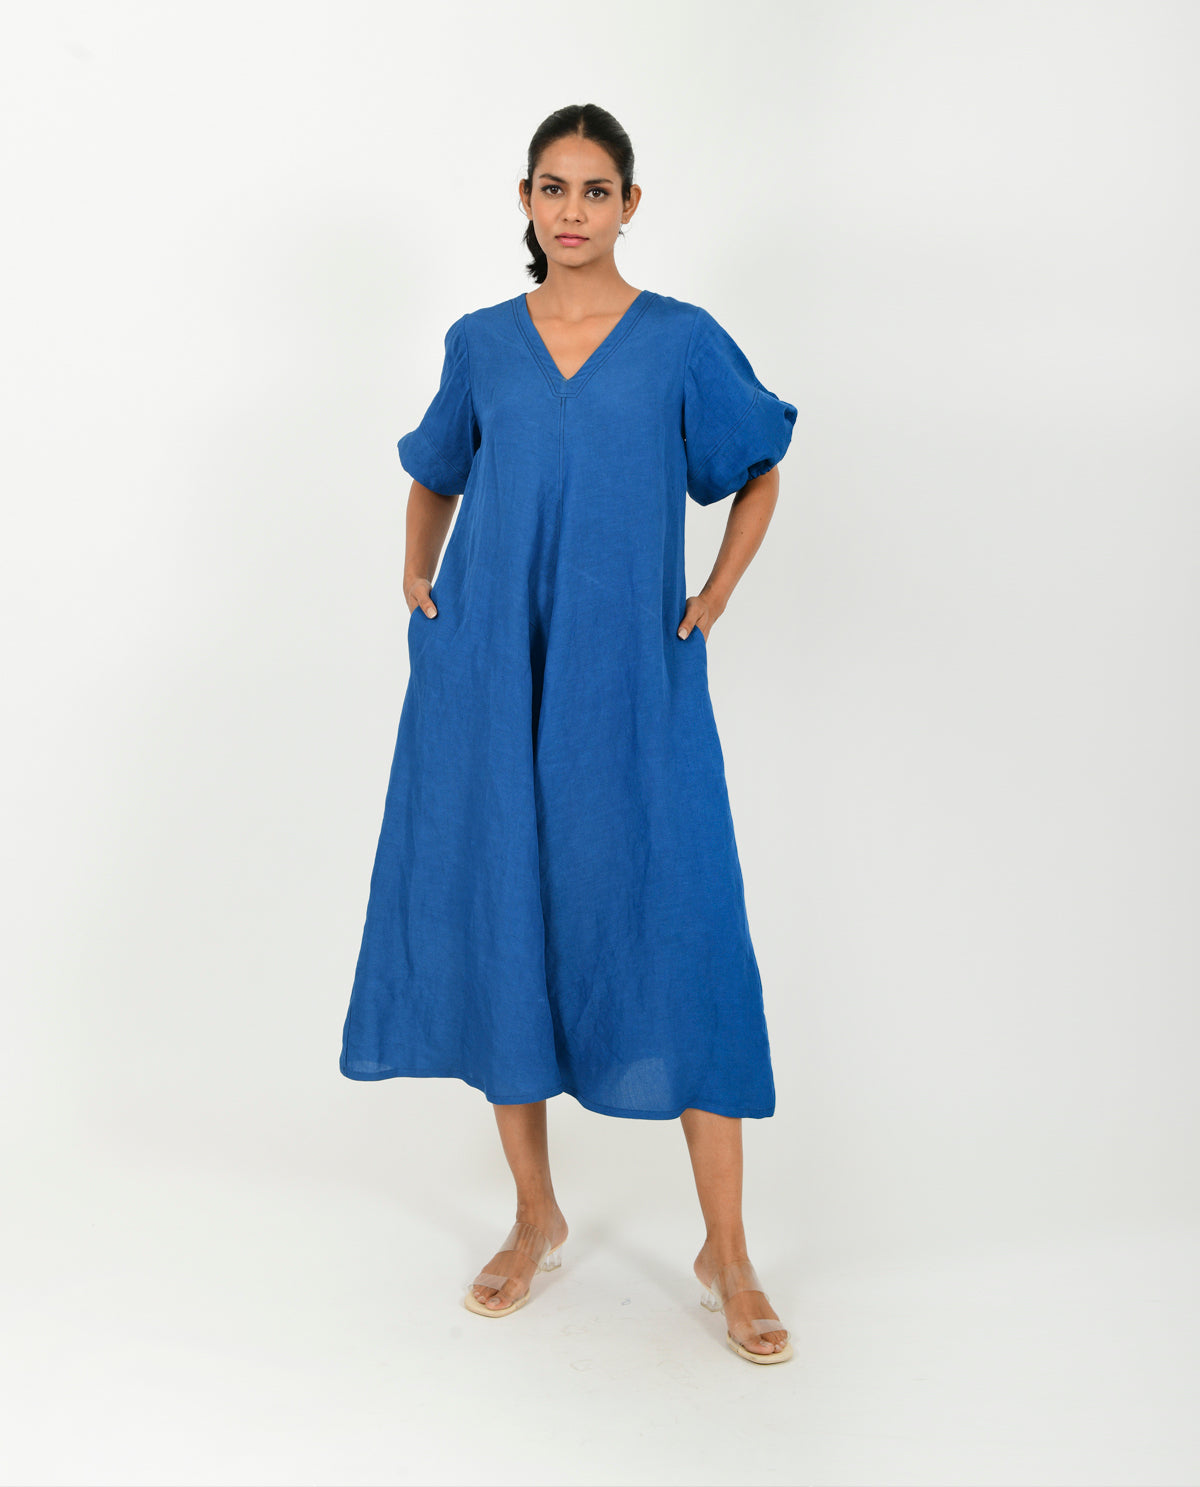 CLASSIC BLUE LINEN DRESS